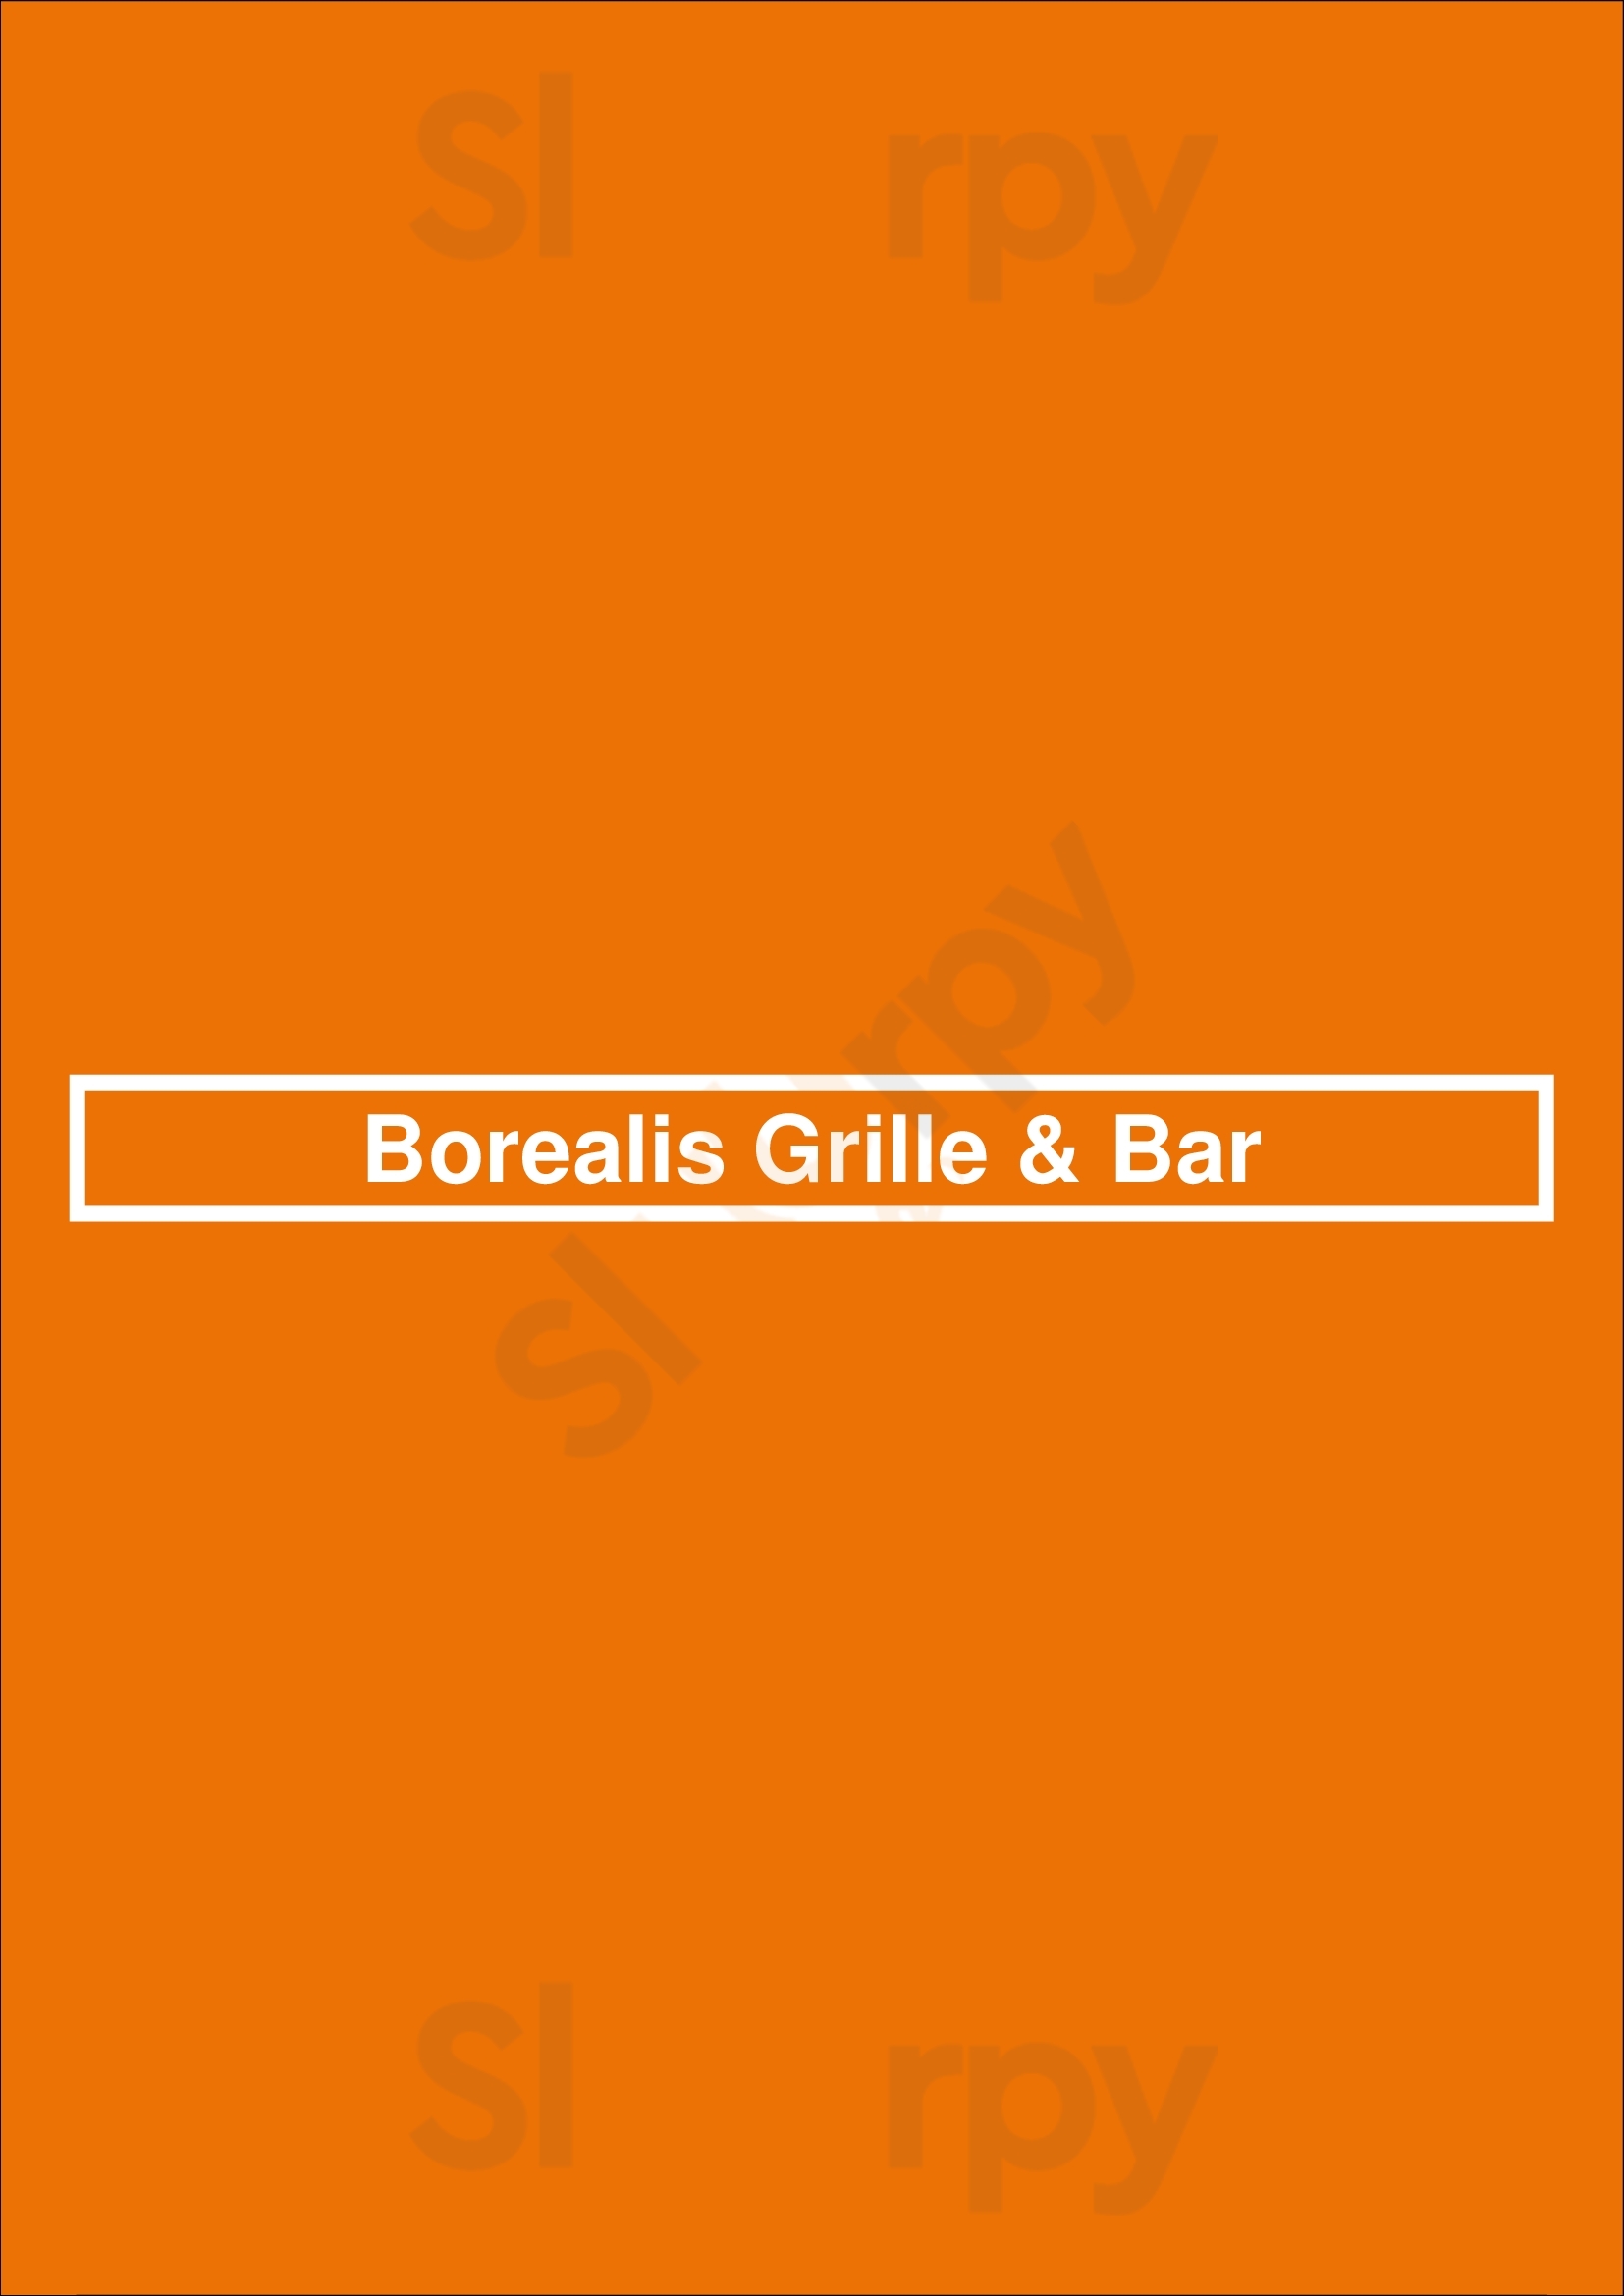 Borealis Grille & Bar Kitchener Menu - 1